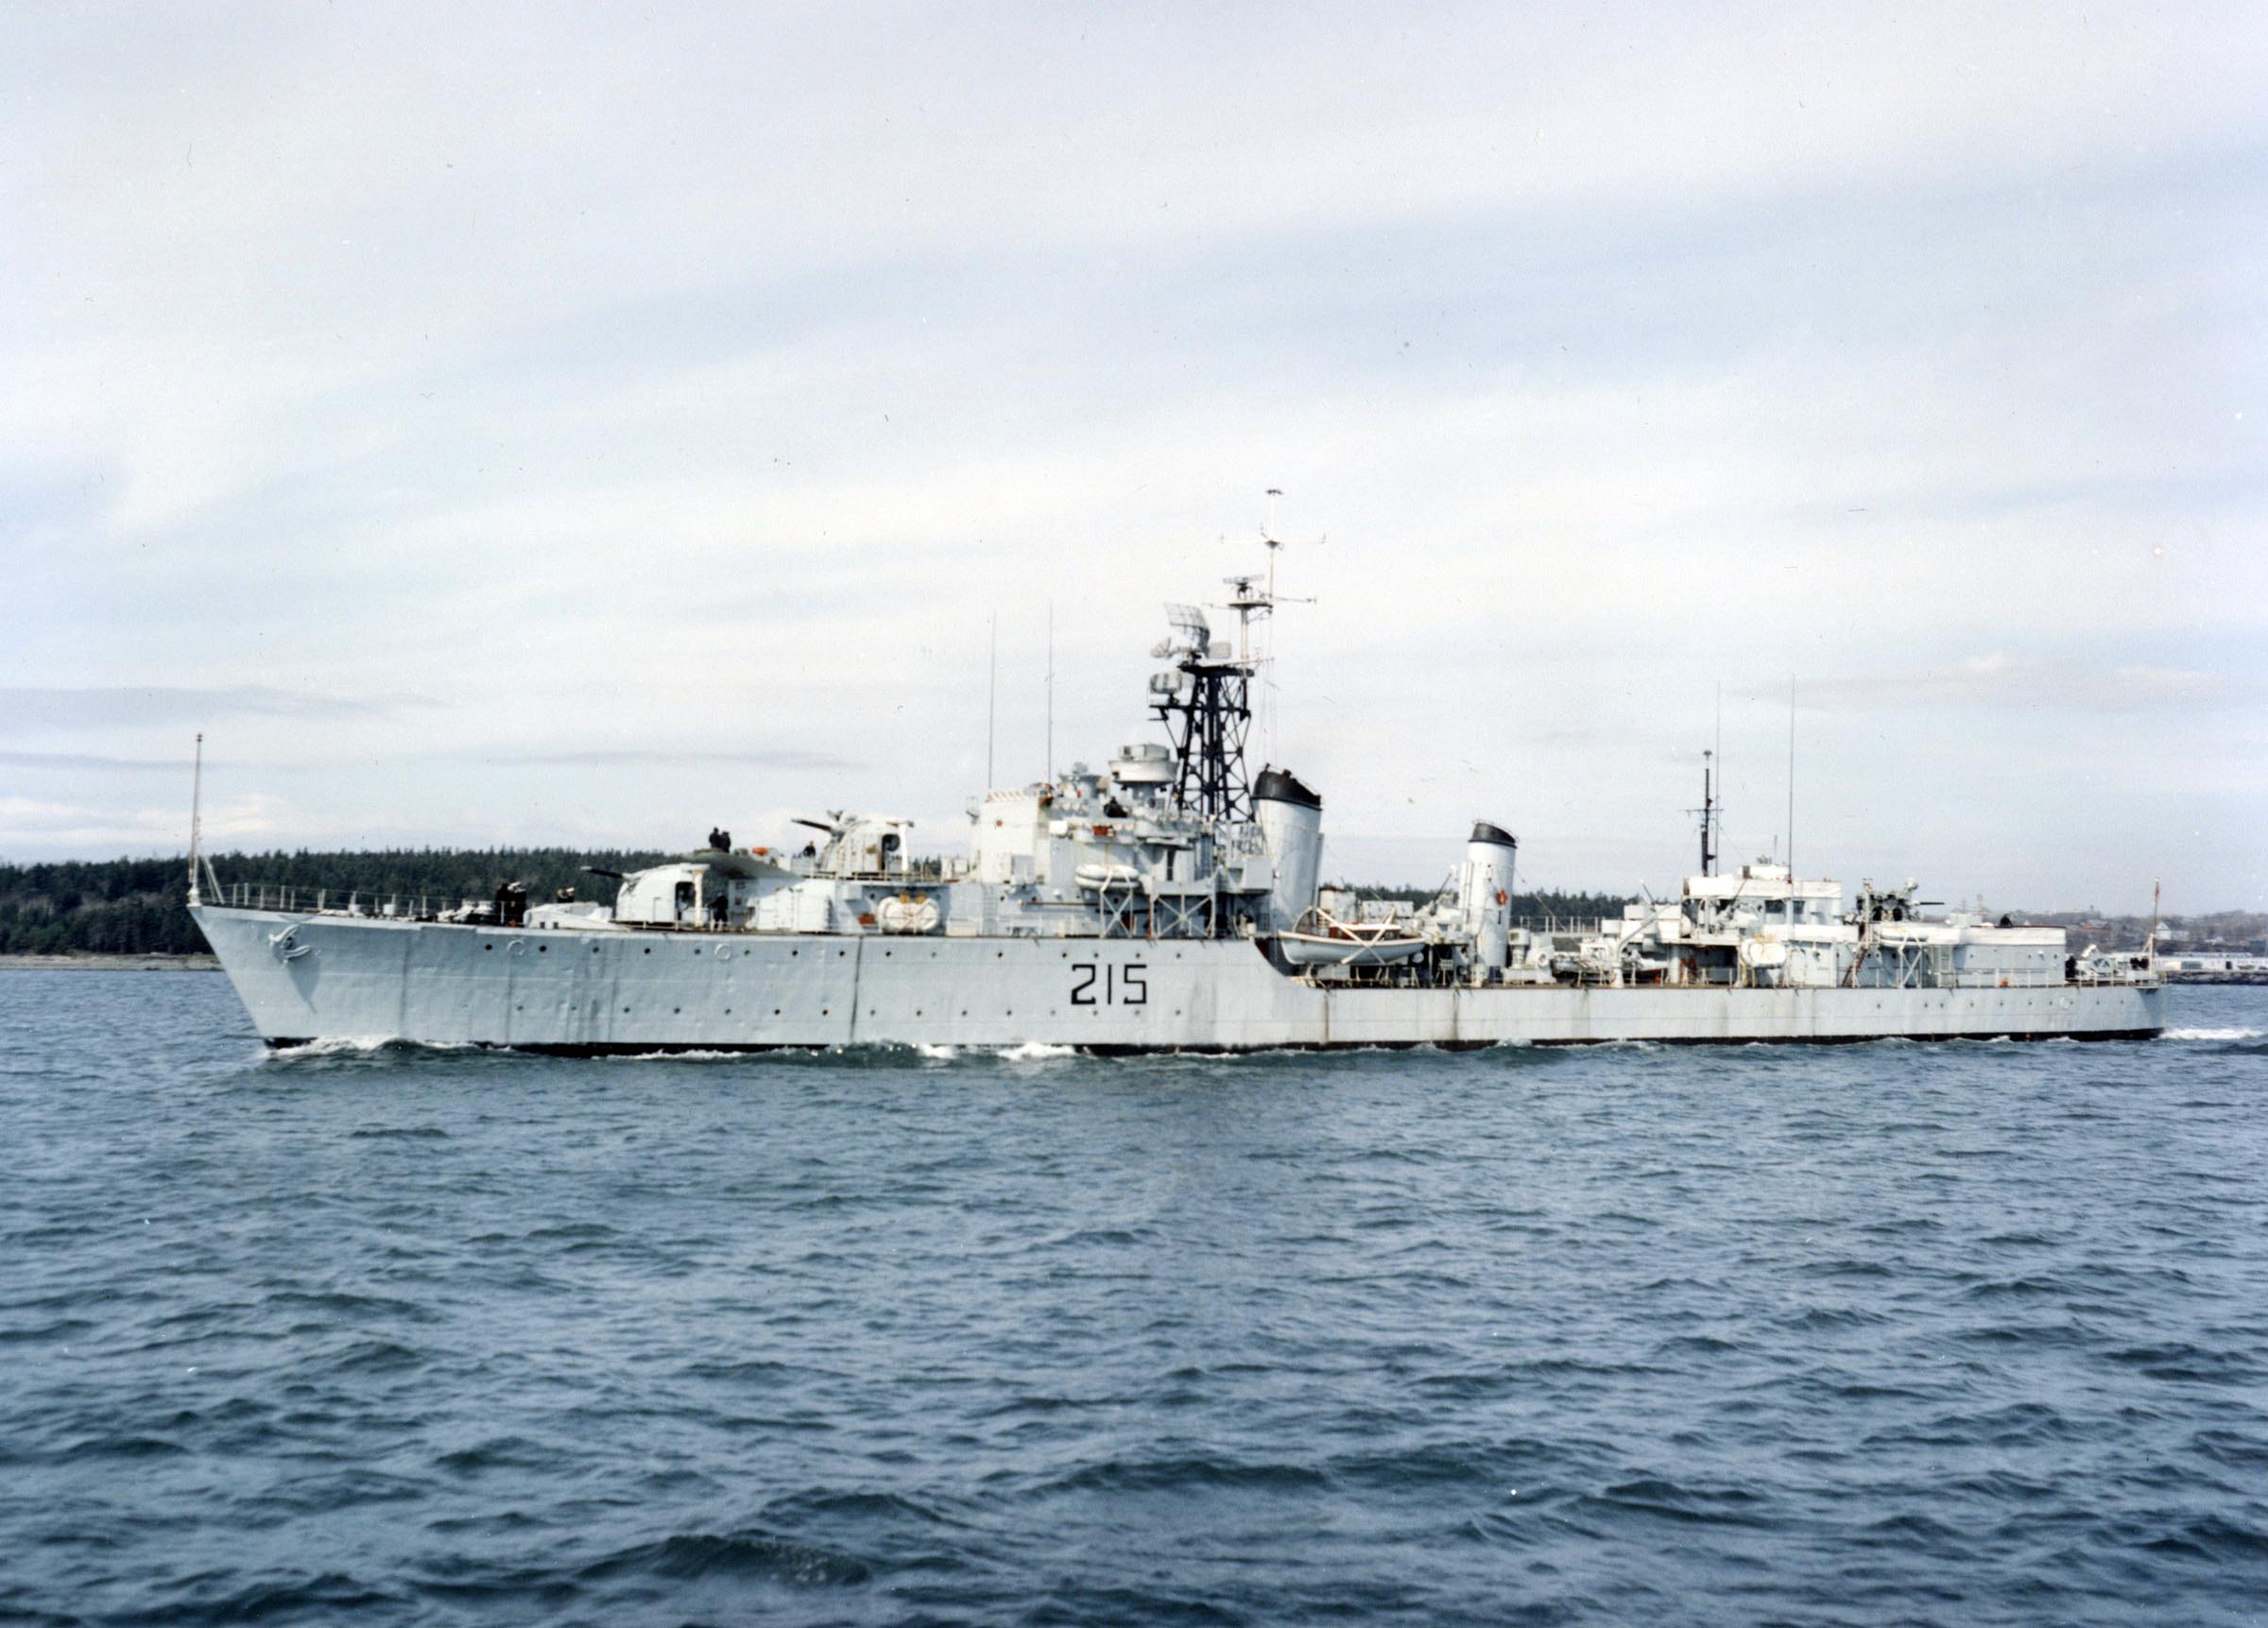 Post War HMCS HAIDA